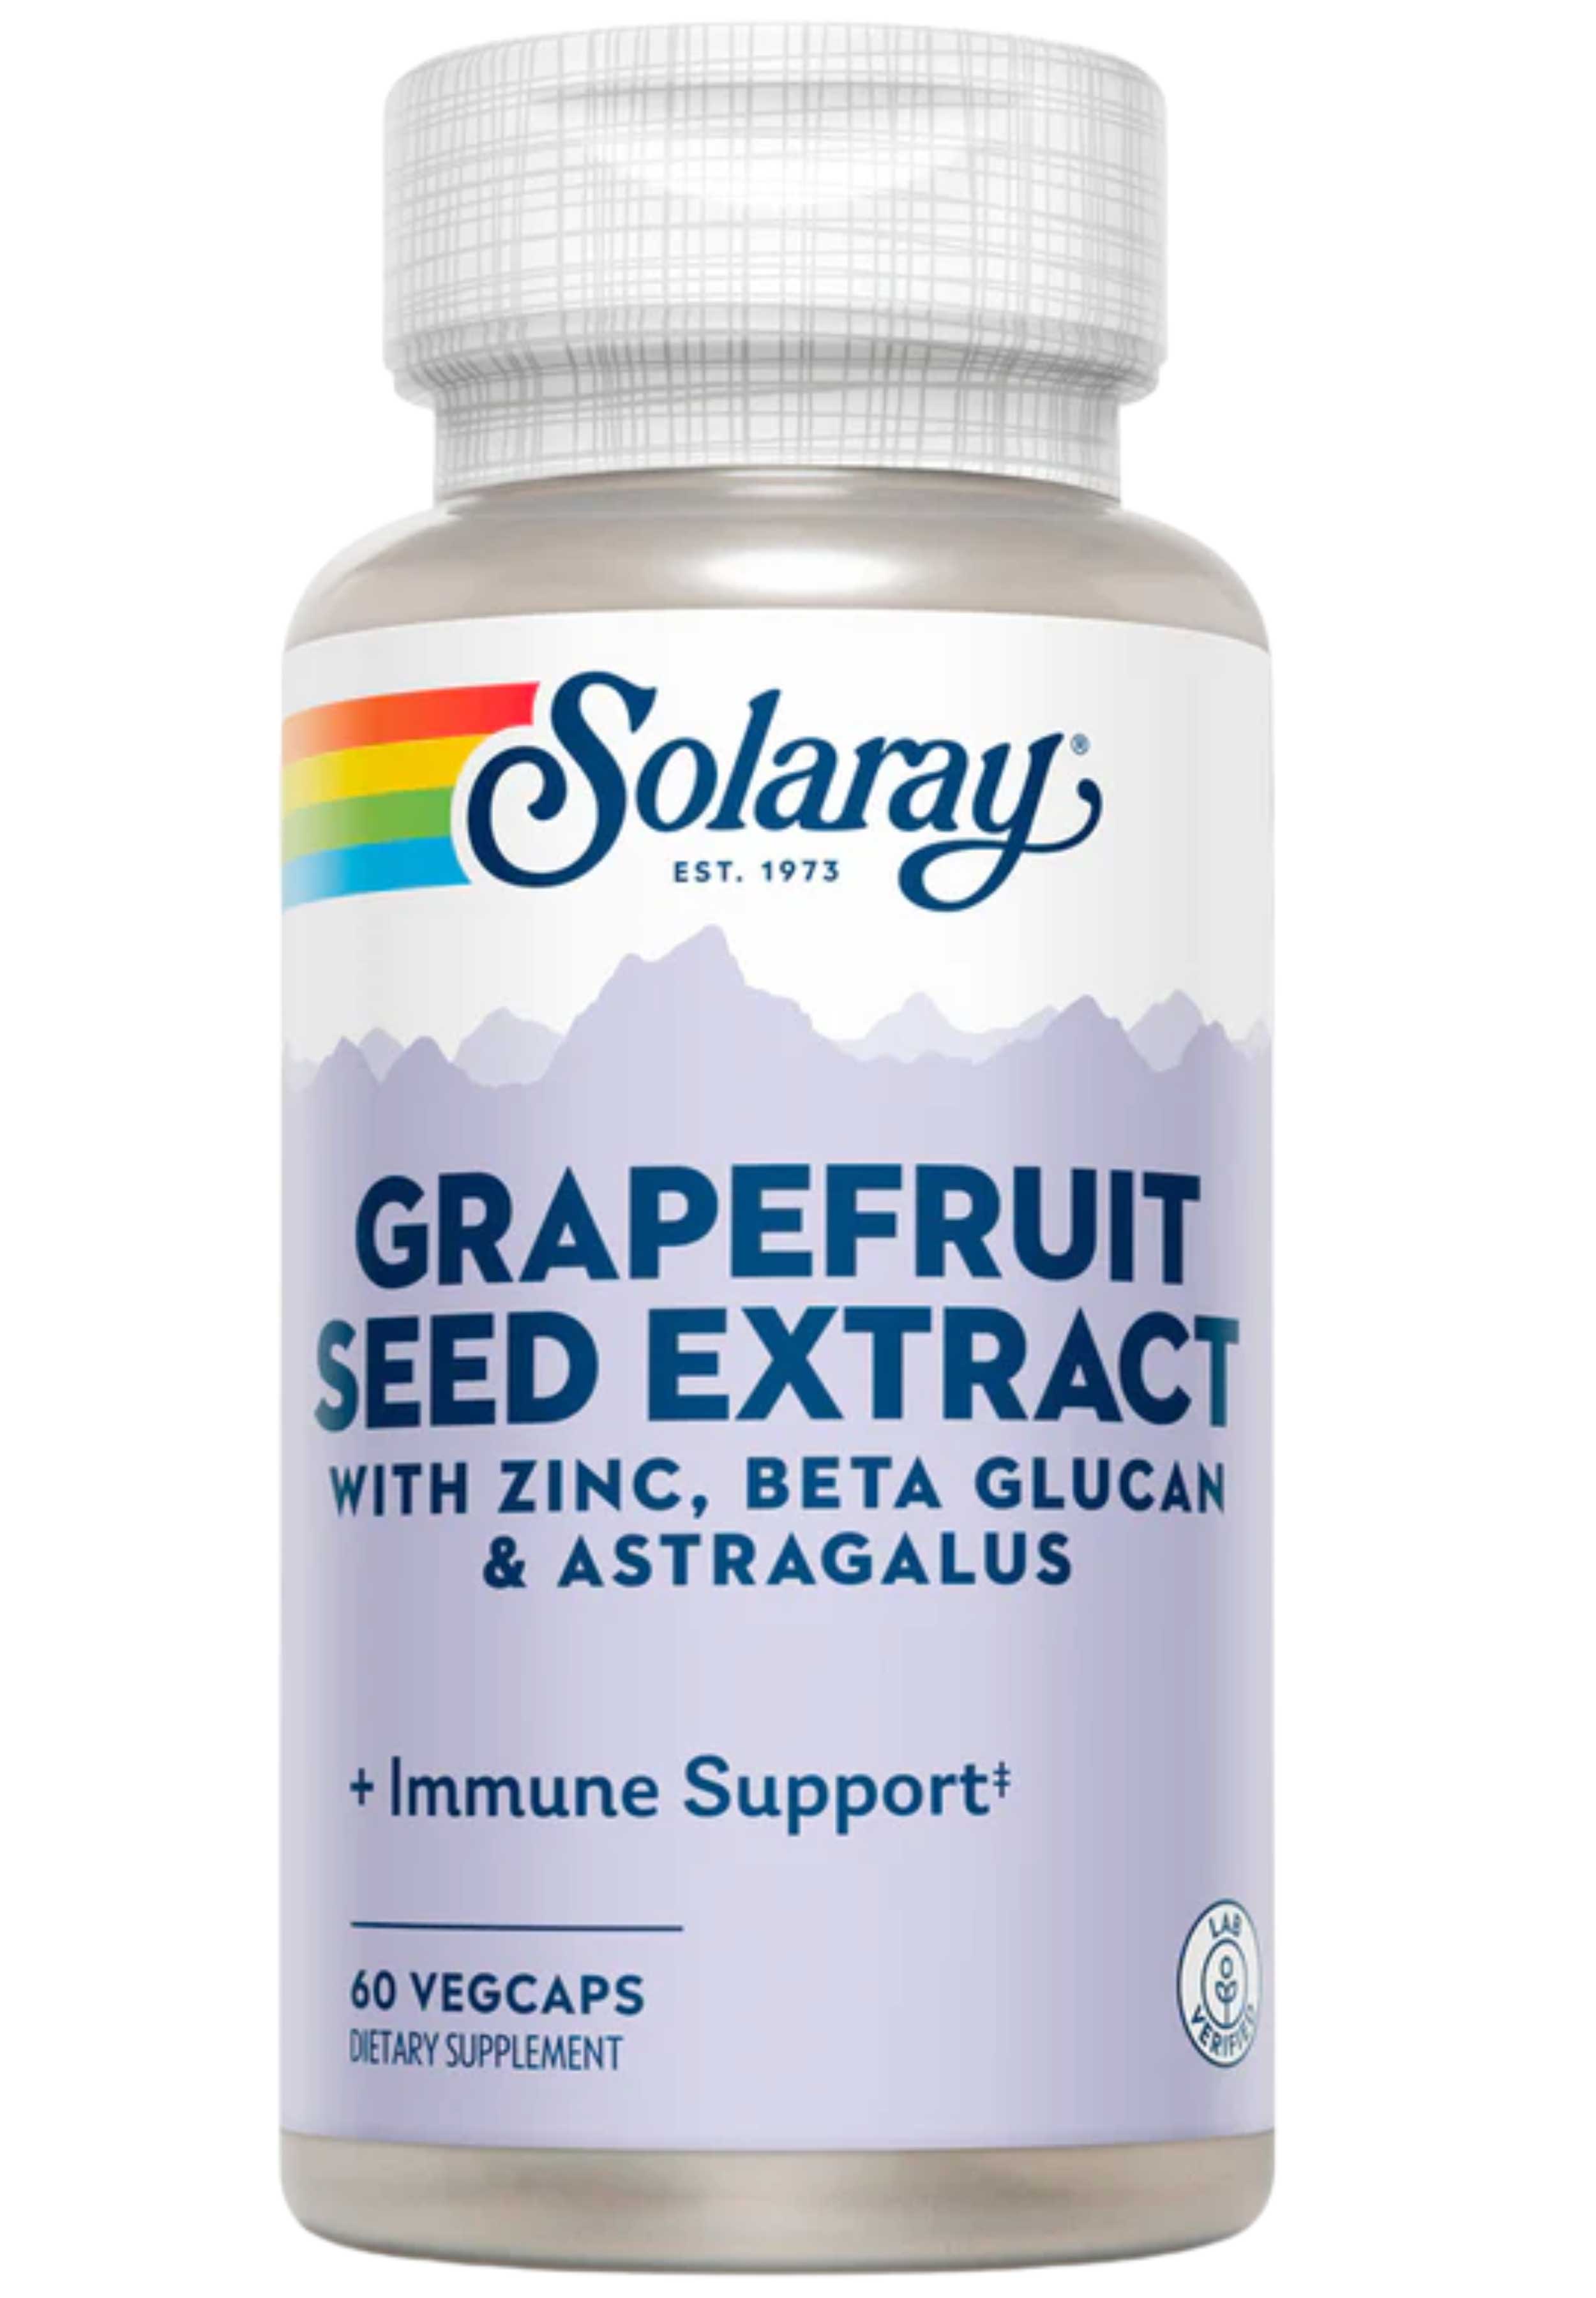 Solaray Grapefruit Seed Extract